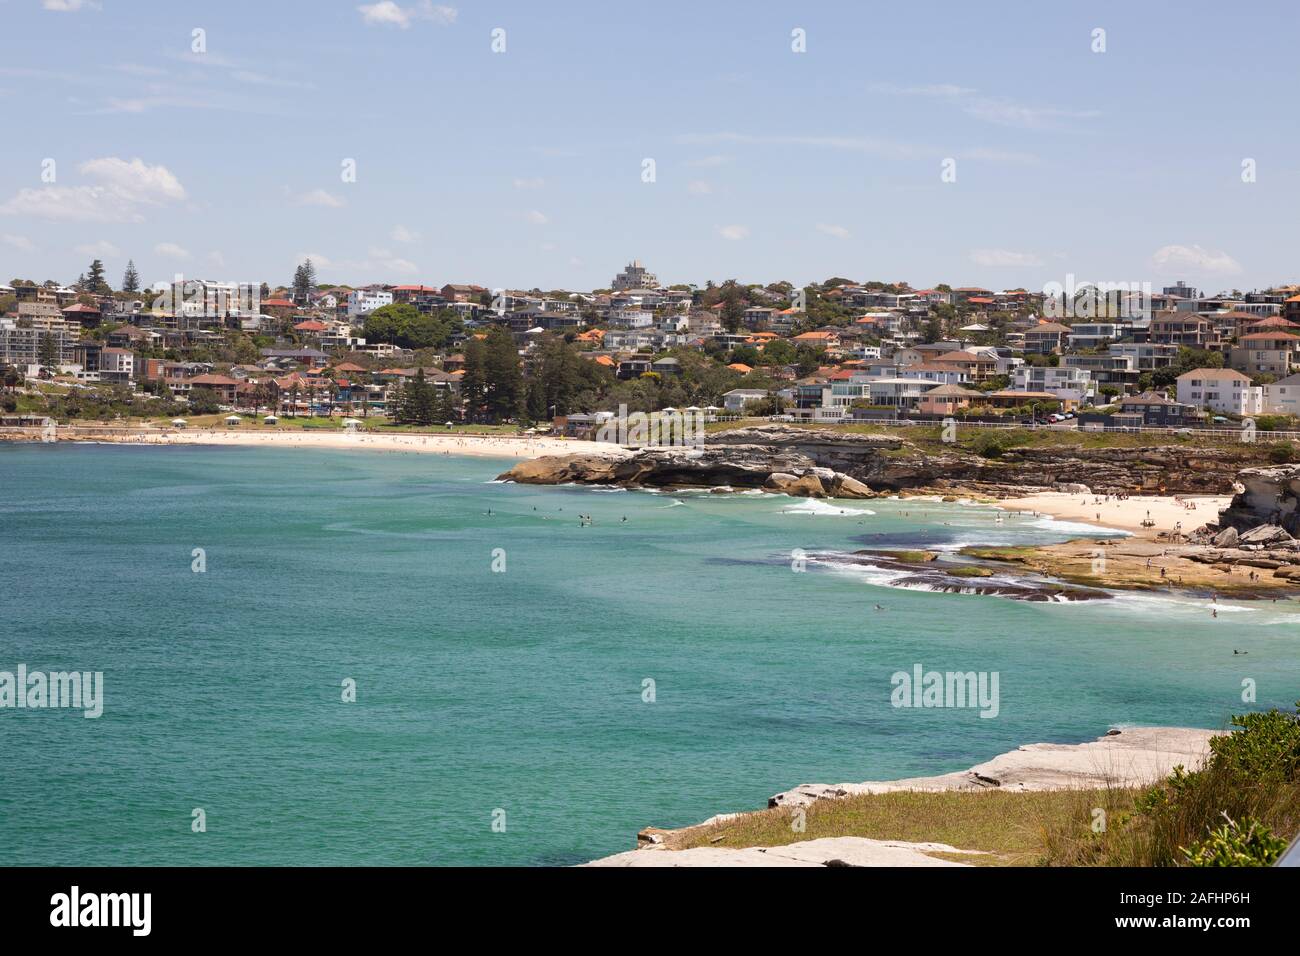 Sydney Bondi à Bronte Ocean Walk ; vue sur les plages de Tamarama et Bronte, Sydney Nouvelle-Galles du Sud Australie Banque D'Images